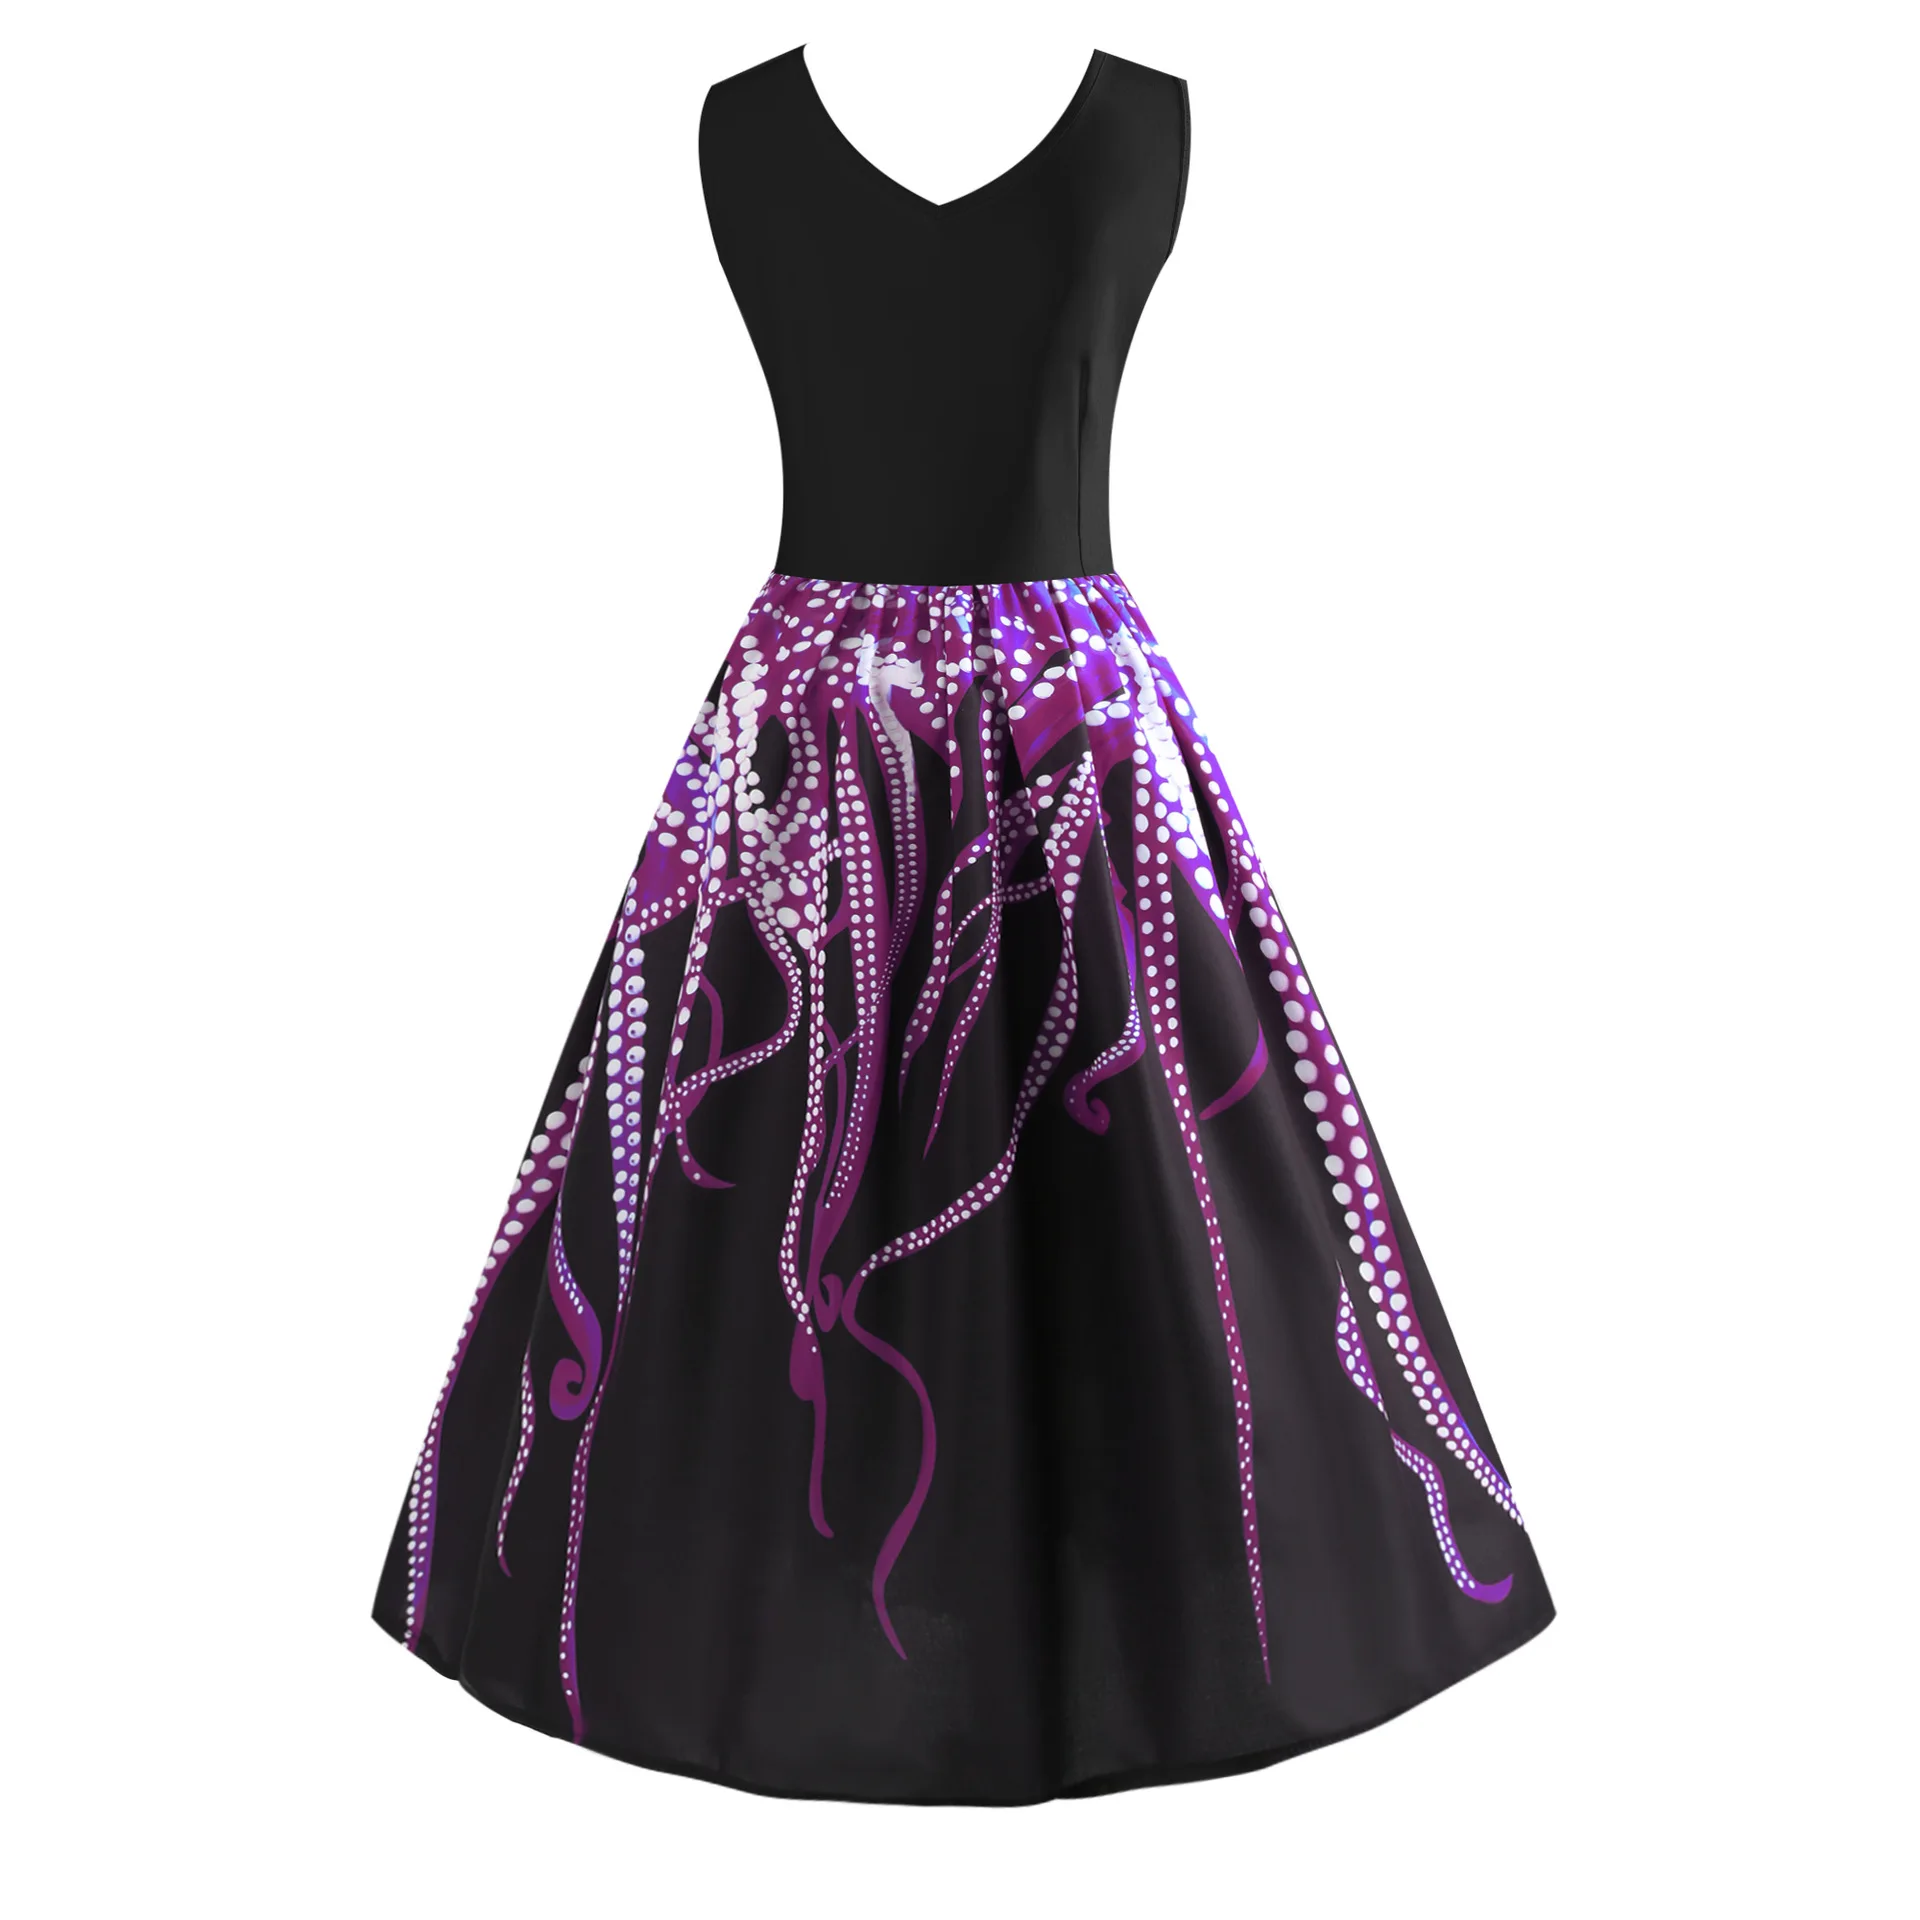 Винтажное платье Одри Хепберн черного цвета с принтом осьминога летнее ретро платье Большие размеры рокабилли Feminino Vestidos